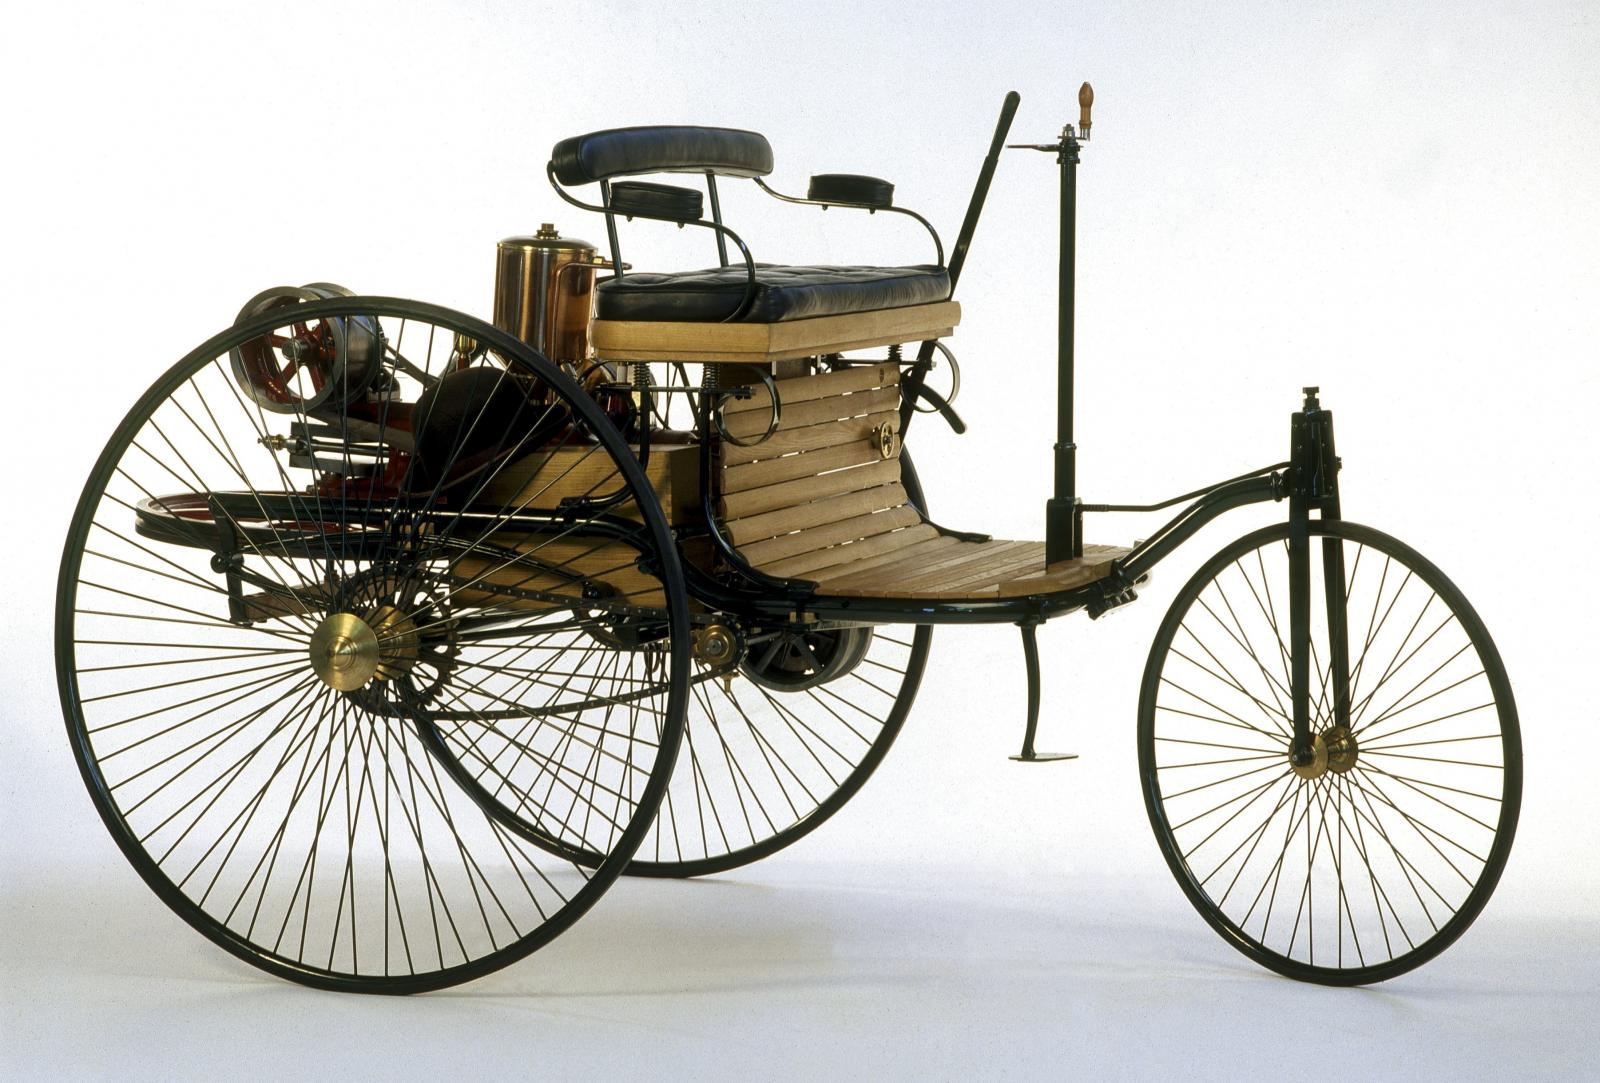 Giá bán xe Benz Patent Motorwagen lúc ra mắt khoảng 150 USD (~ hơn 4.000 USD bây giờ).